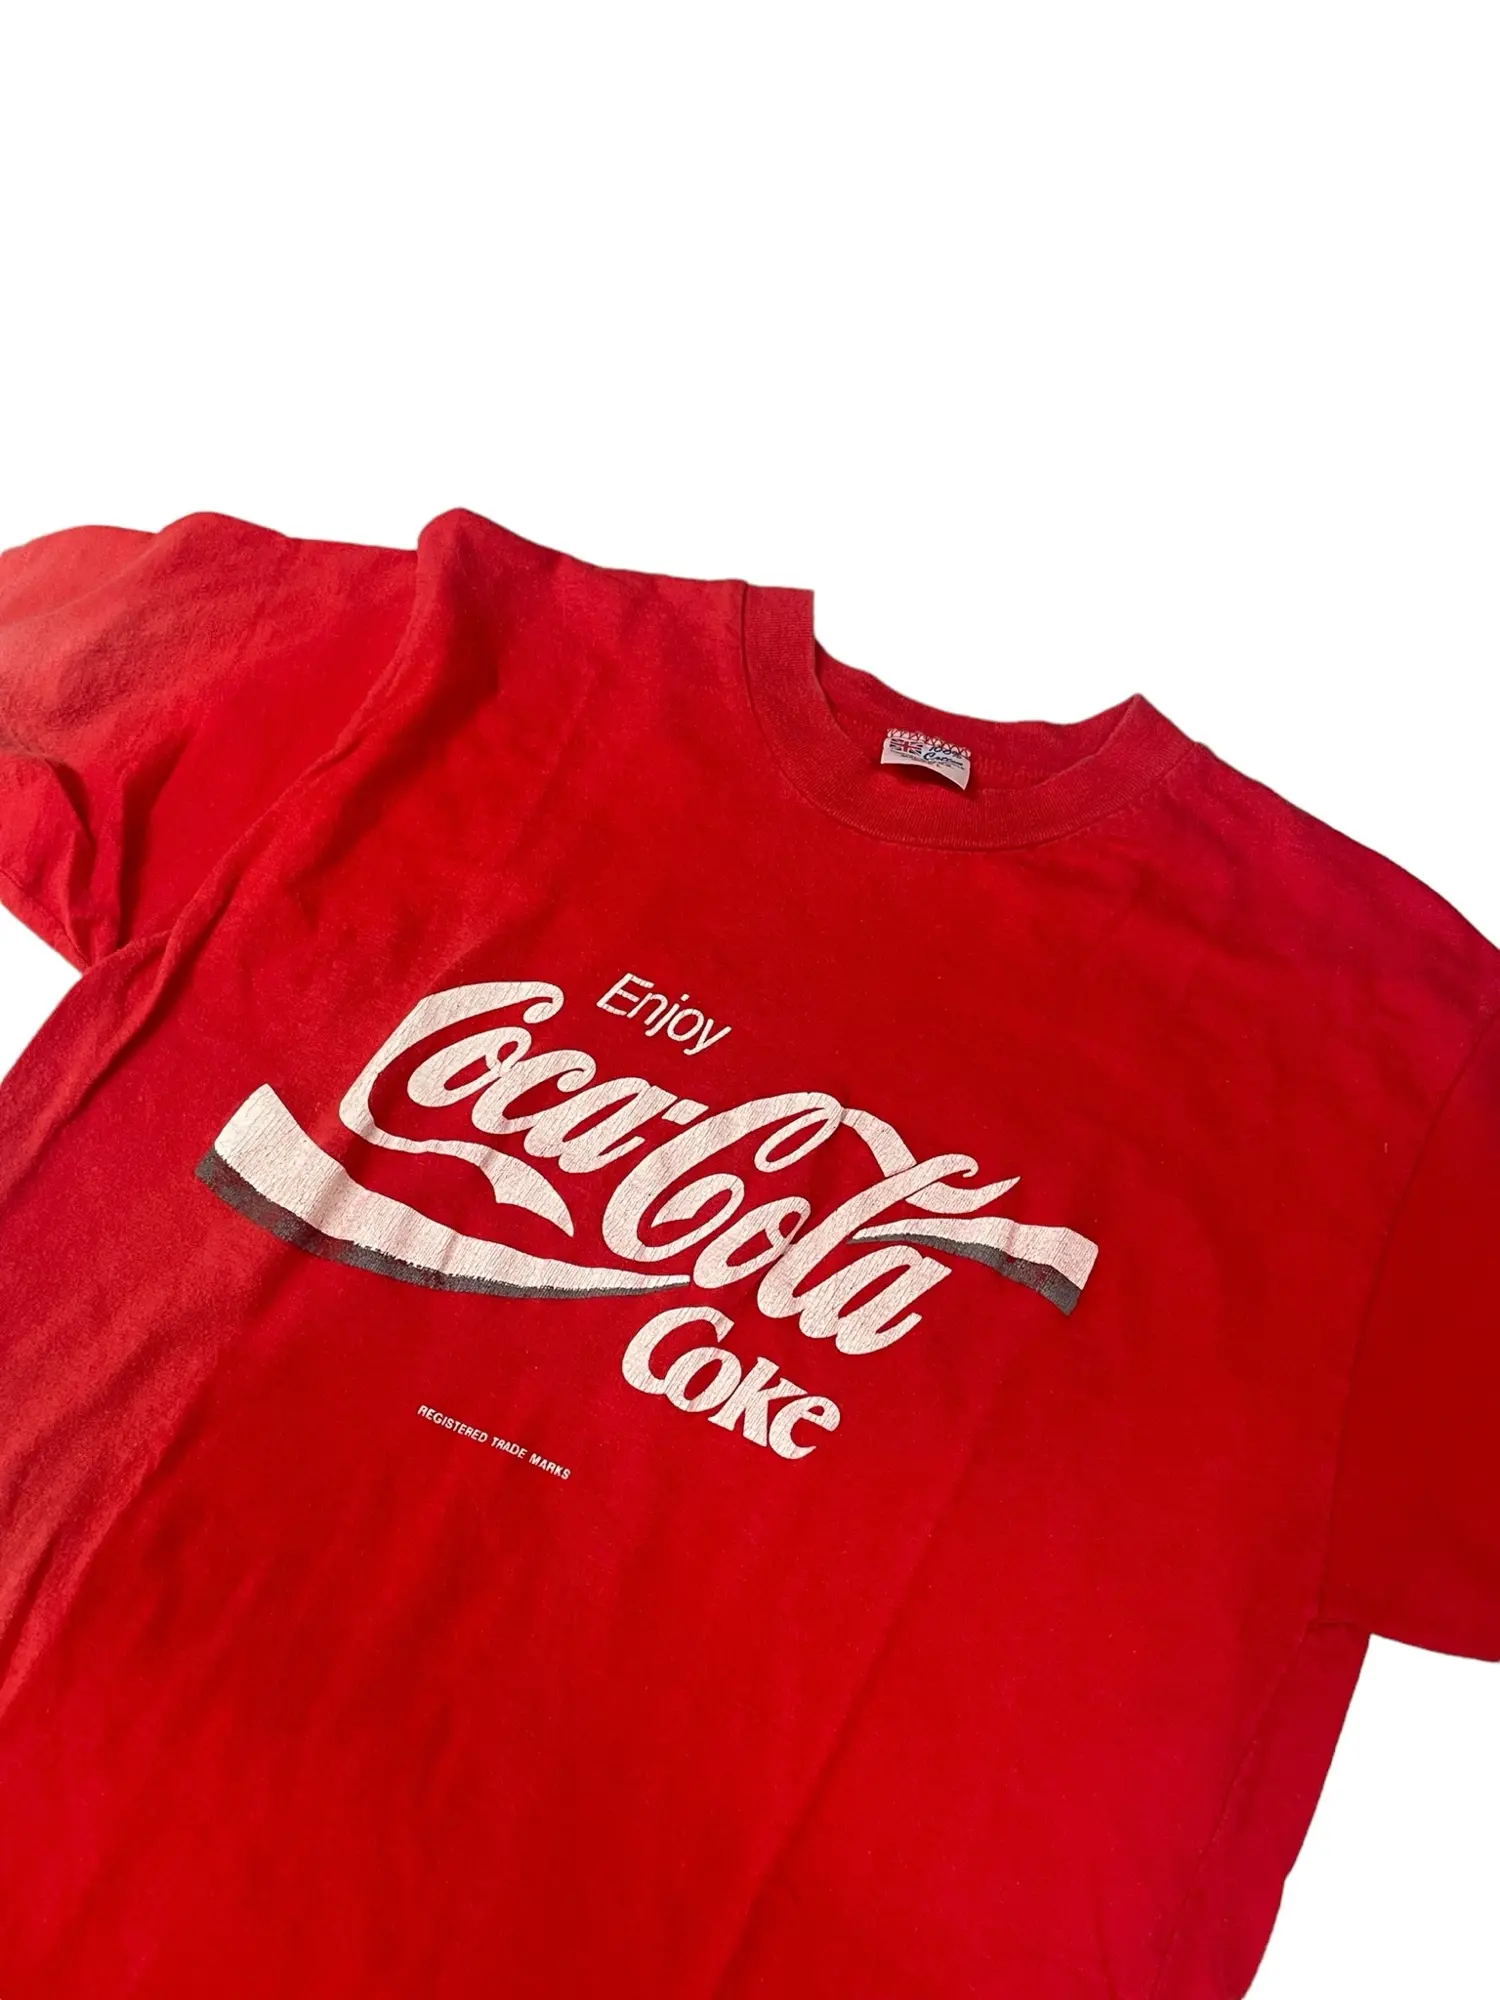 Coca-Cola t-shirt